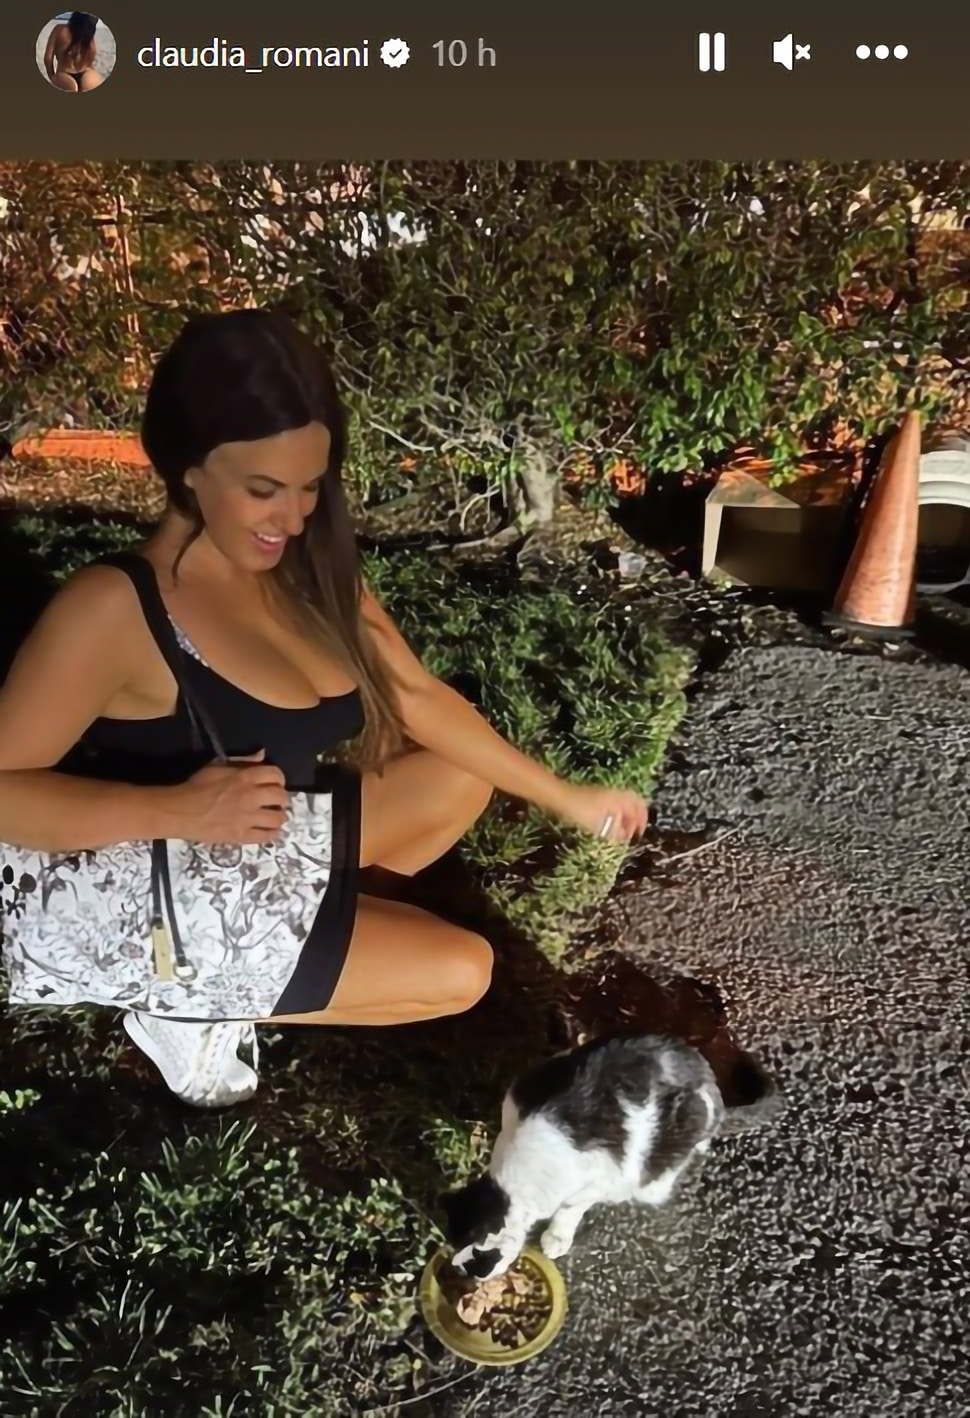 Κλαούντια Ρομάνι: Σκύβει ταΐζει αδέσποτη γάτα, δείχνει χαράδρα και εμείς θέλουμε να την ποτίσουμε